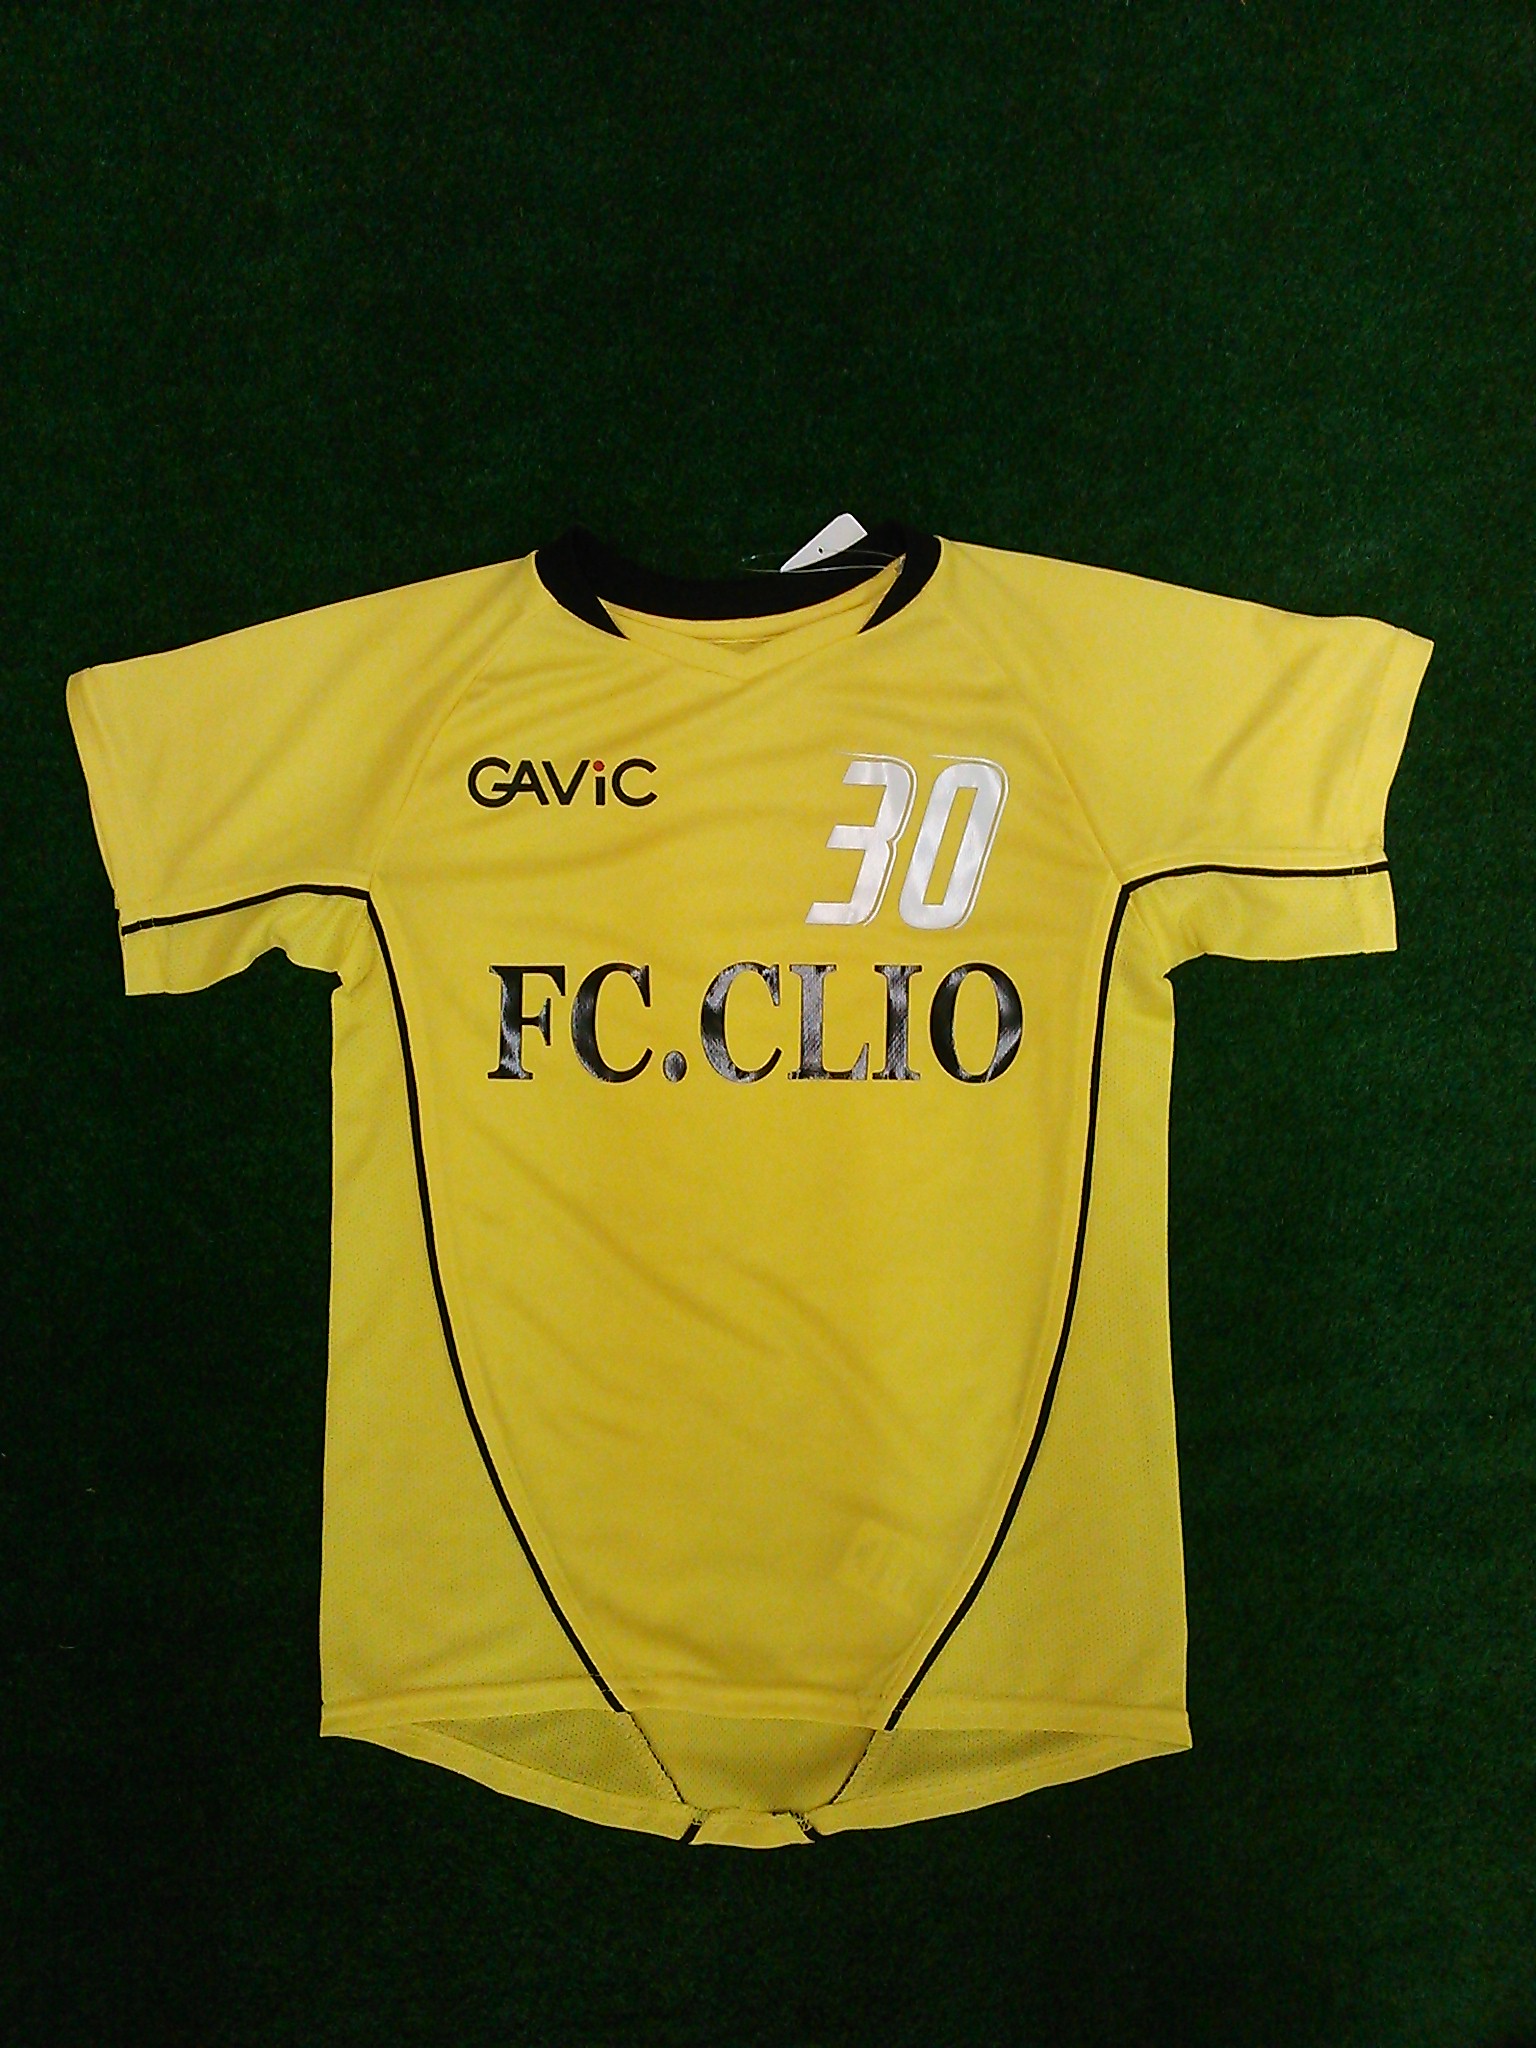 FC.CLIO